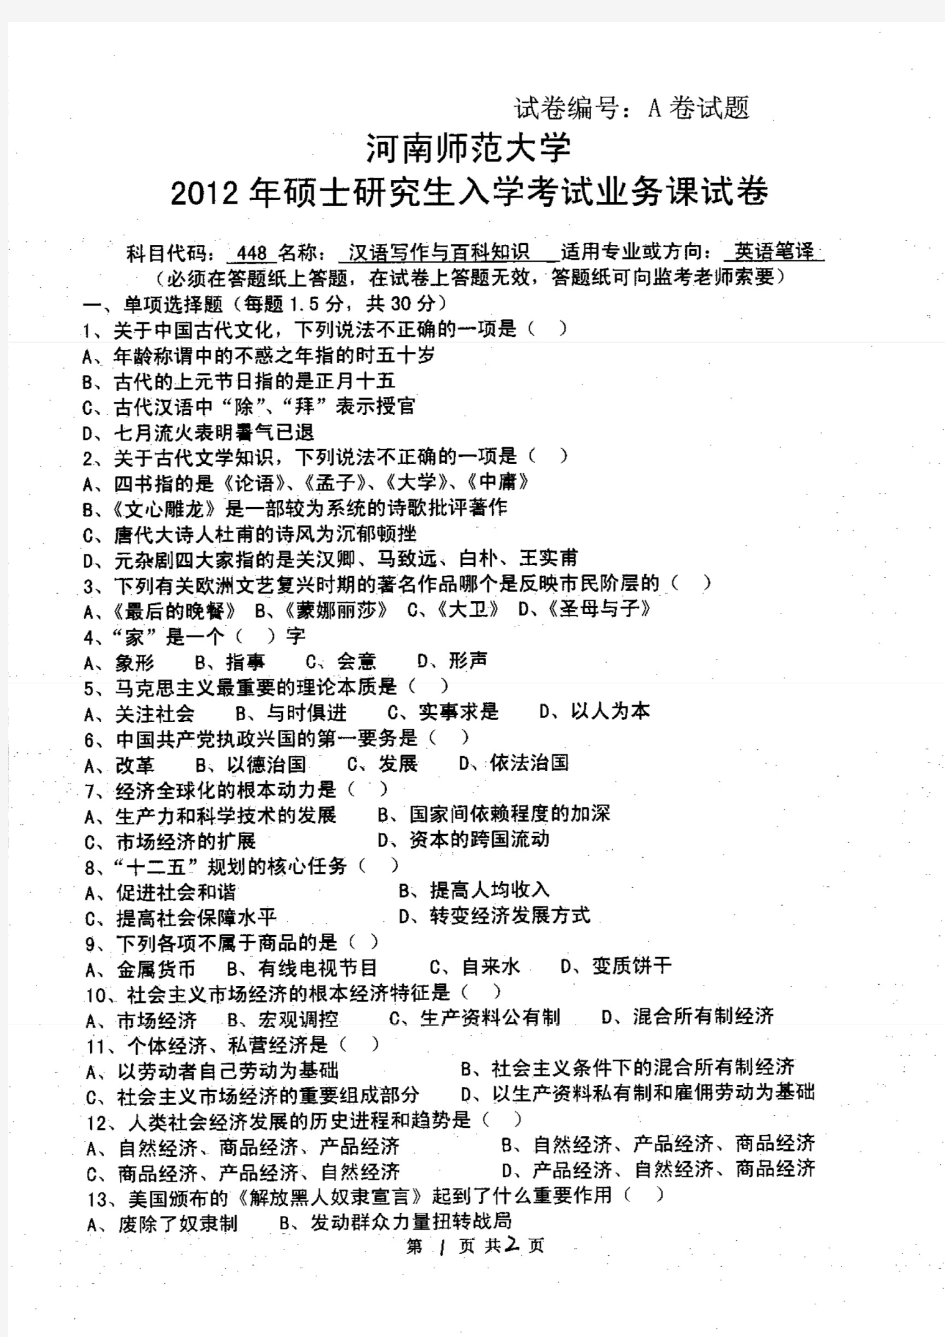 河南师范大学2012年《448汉语写作与百科知识》考研专业课真题试卷